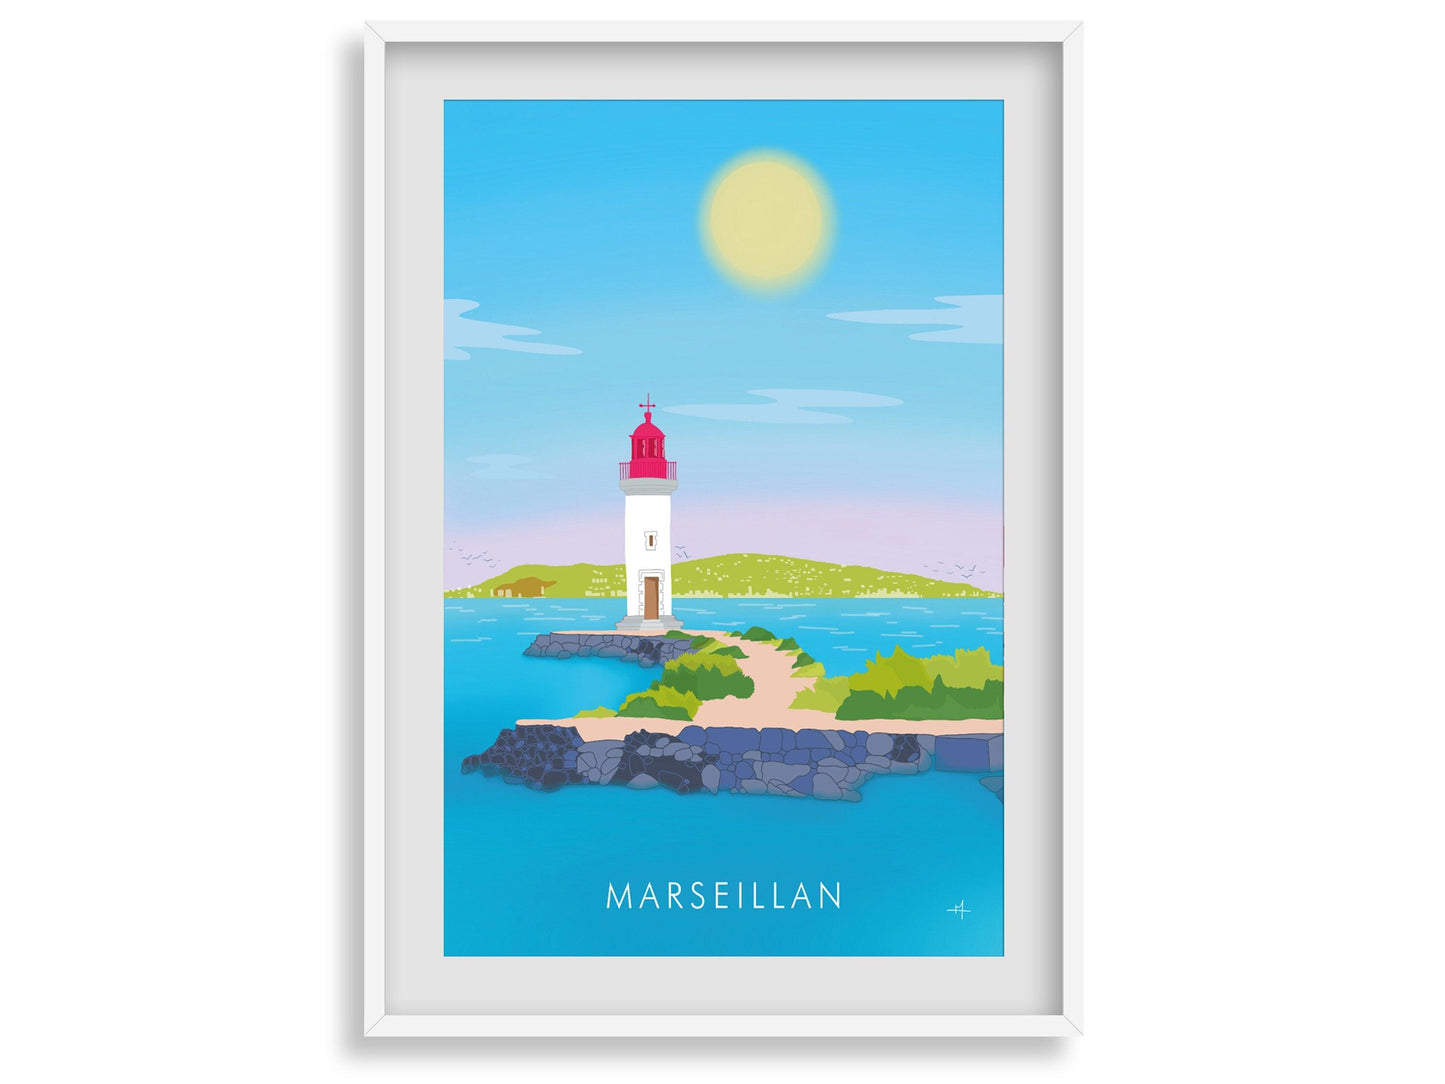 Marseillan - Hérault - France - vacances carte postale affiche - couleur du sud - village soleil - méditerranée - souvenir cadeau été - Imagine.affiche